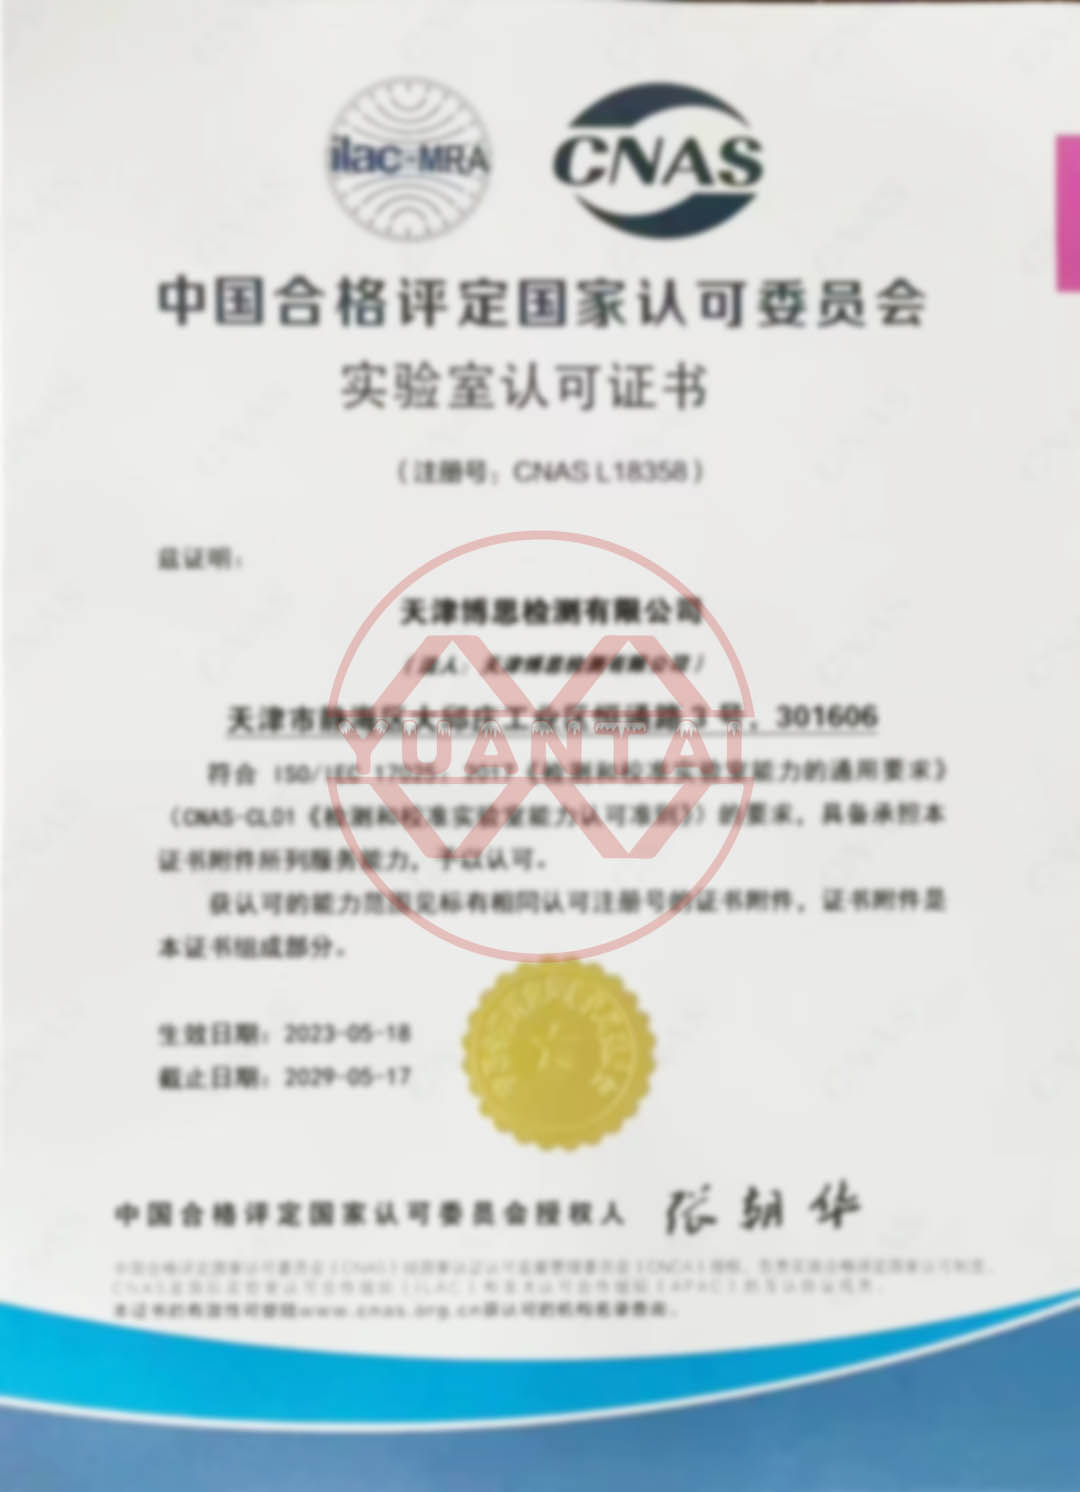 Felicitări Tianjin Bosi Testing Co., Ltd., o subsidiară a Yuantai Derun Steel Pipe Group, pentru promovarea certificării CNAS.